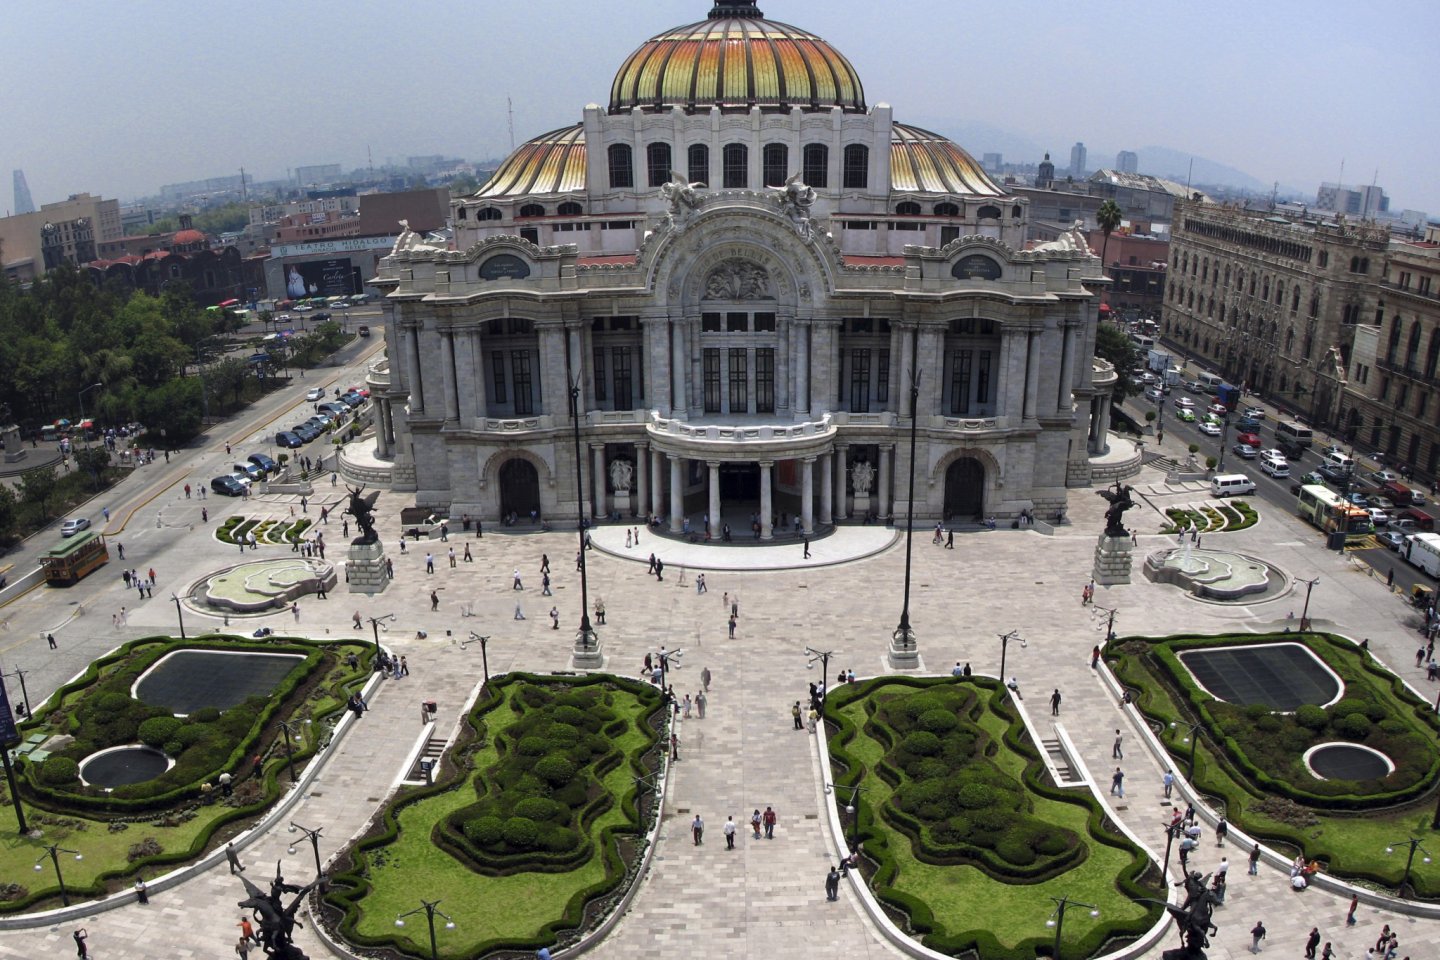 El Palacio de Bellas Artes in Mexico City